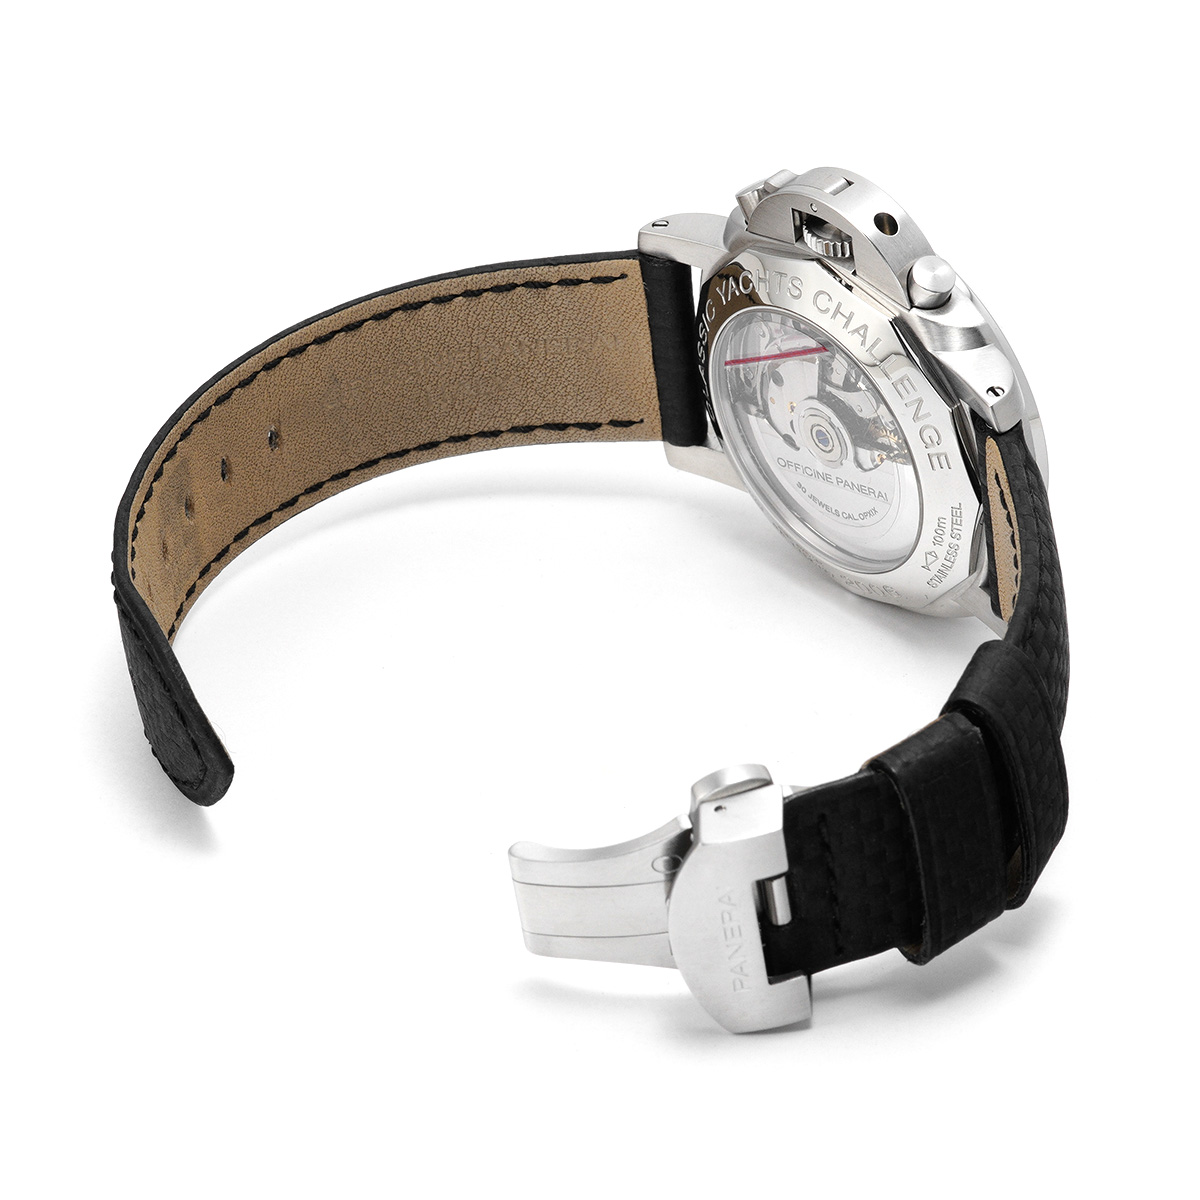 パネライ / PANERAI ルミノール 1950 フライバック レガッタ PAM00253 ブラック メンズ 時計 【中古】【wristwatch】